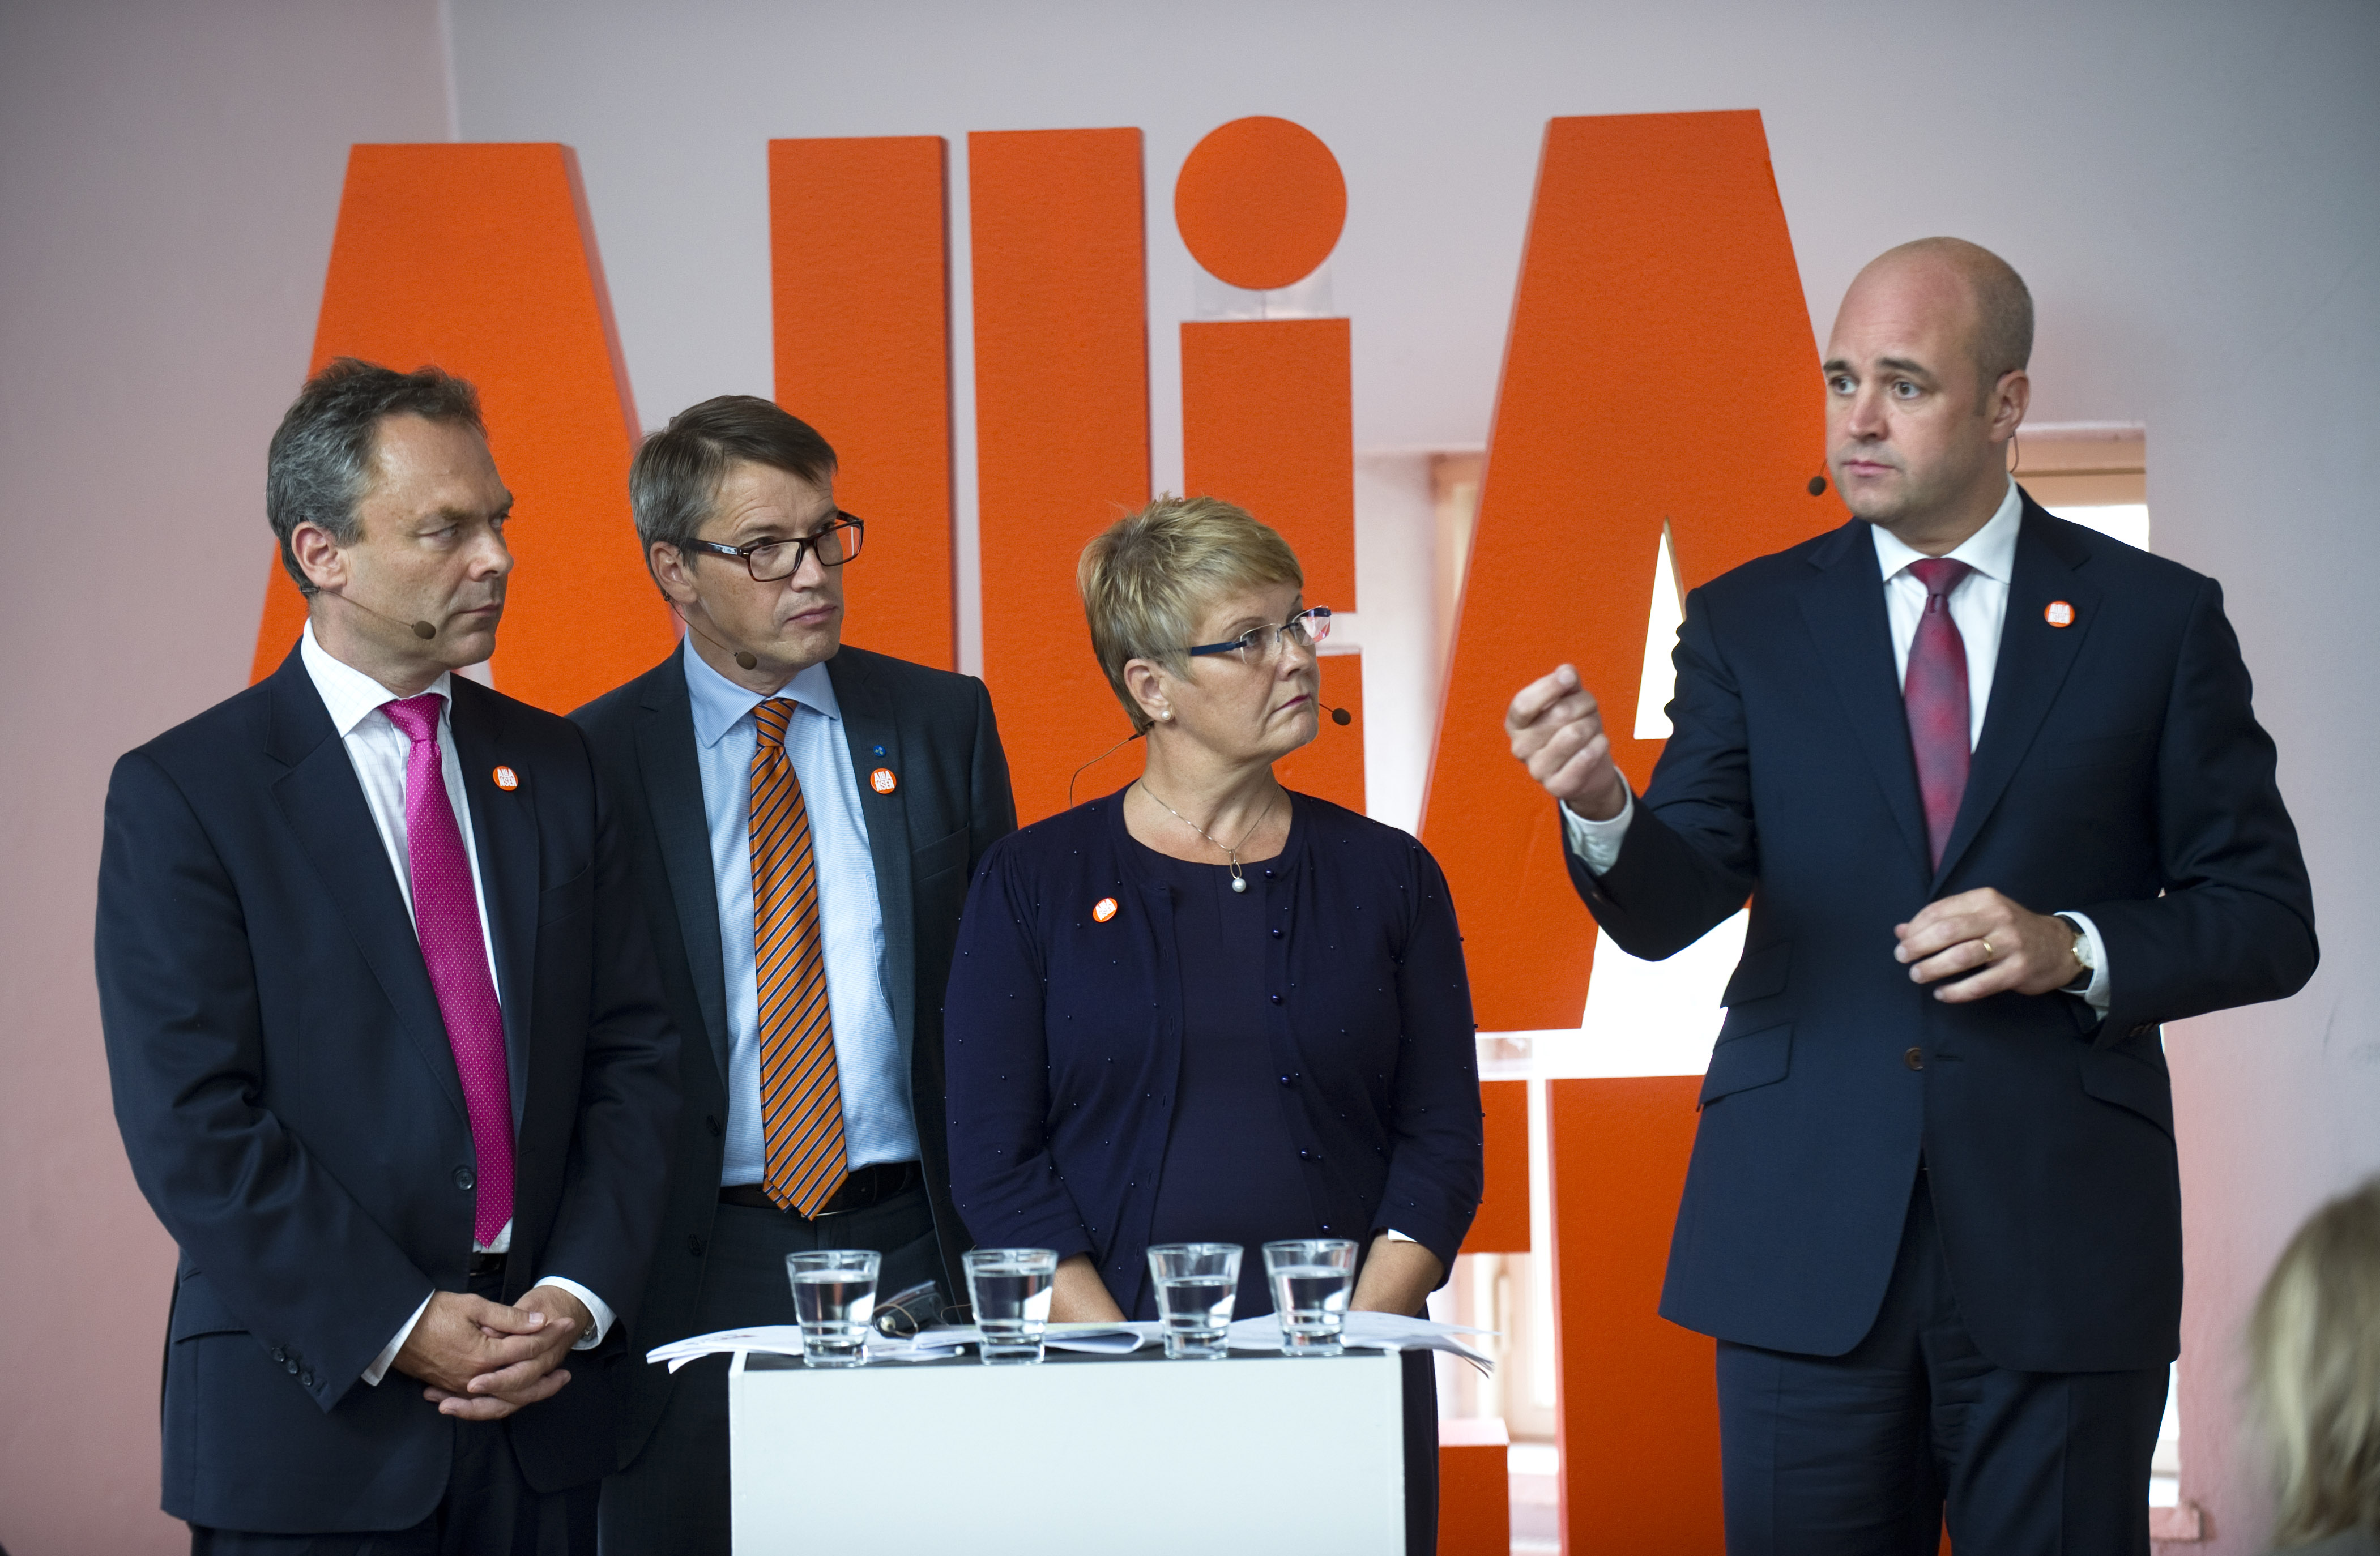 Sverige har tacklat krisens utmaningar väl säger Reinfeldt.